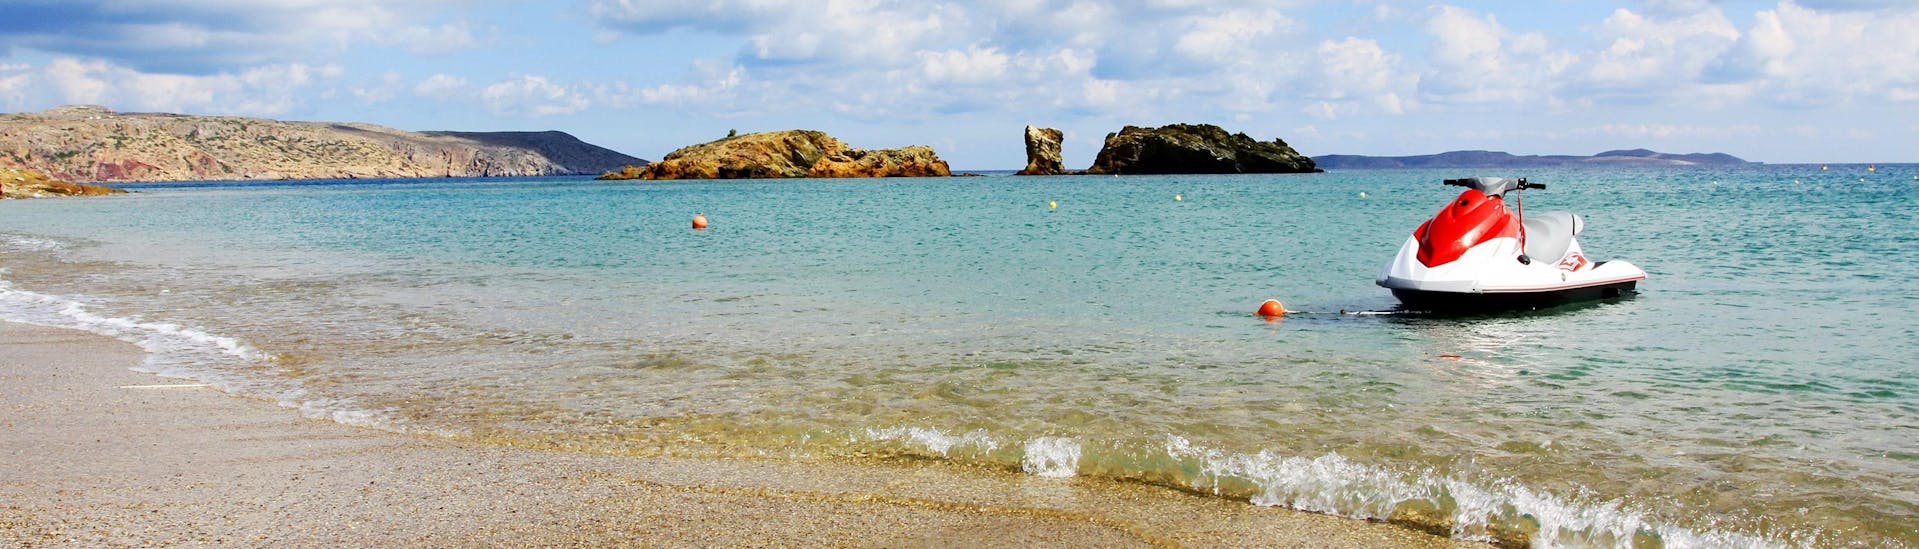 Ein Jetski an einem Strand in der Region Rethymno, wo viele Wassersportaktivitäten stattfinden.